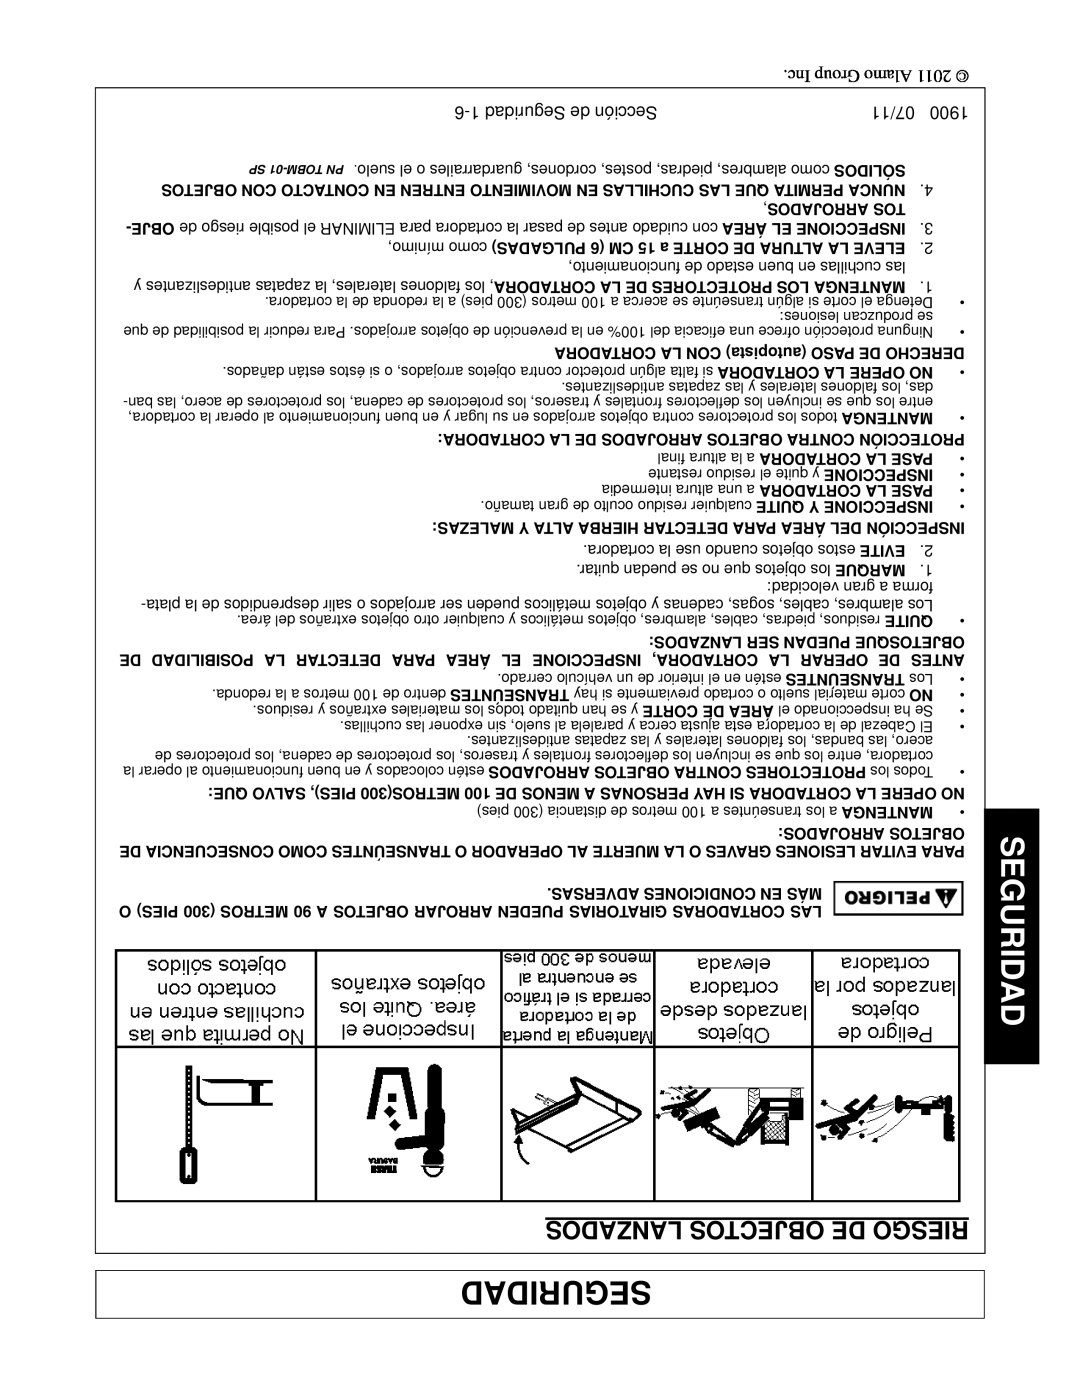 Alamo 1900 manual Lanzados Objectos De Riesgo, 6-1Seguridad de Sección, 07/11 